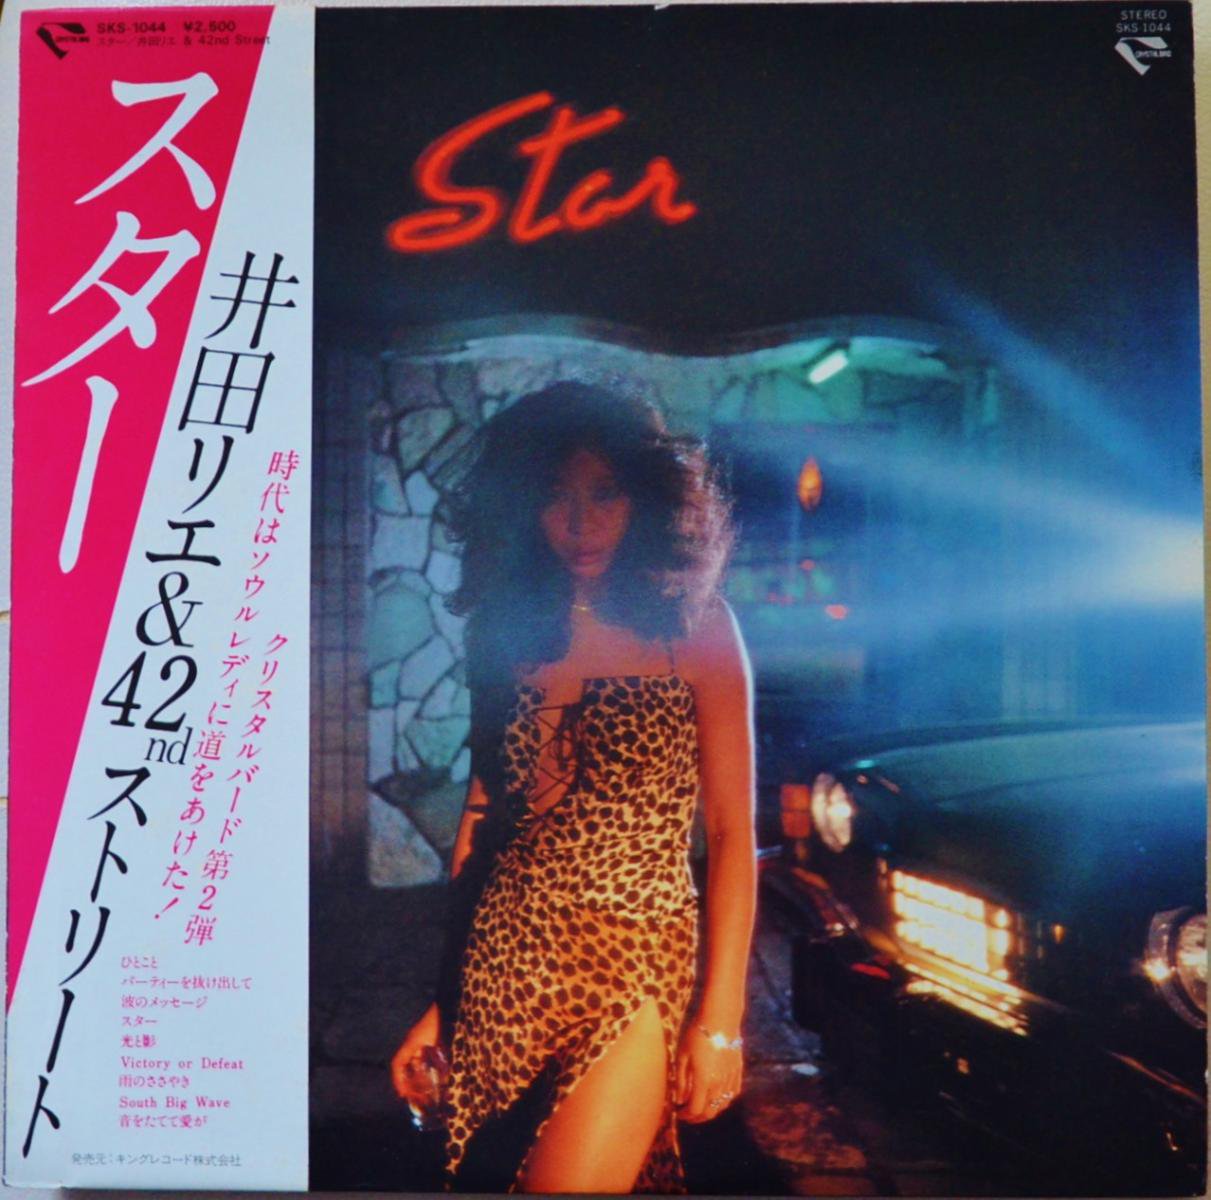 井田リエ & 42ND STREET (RIE & 42ND STREET) / STAR (LP) - HIP TANK 